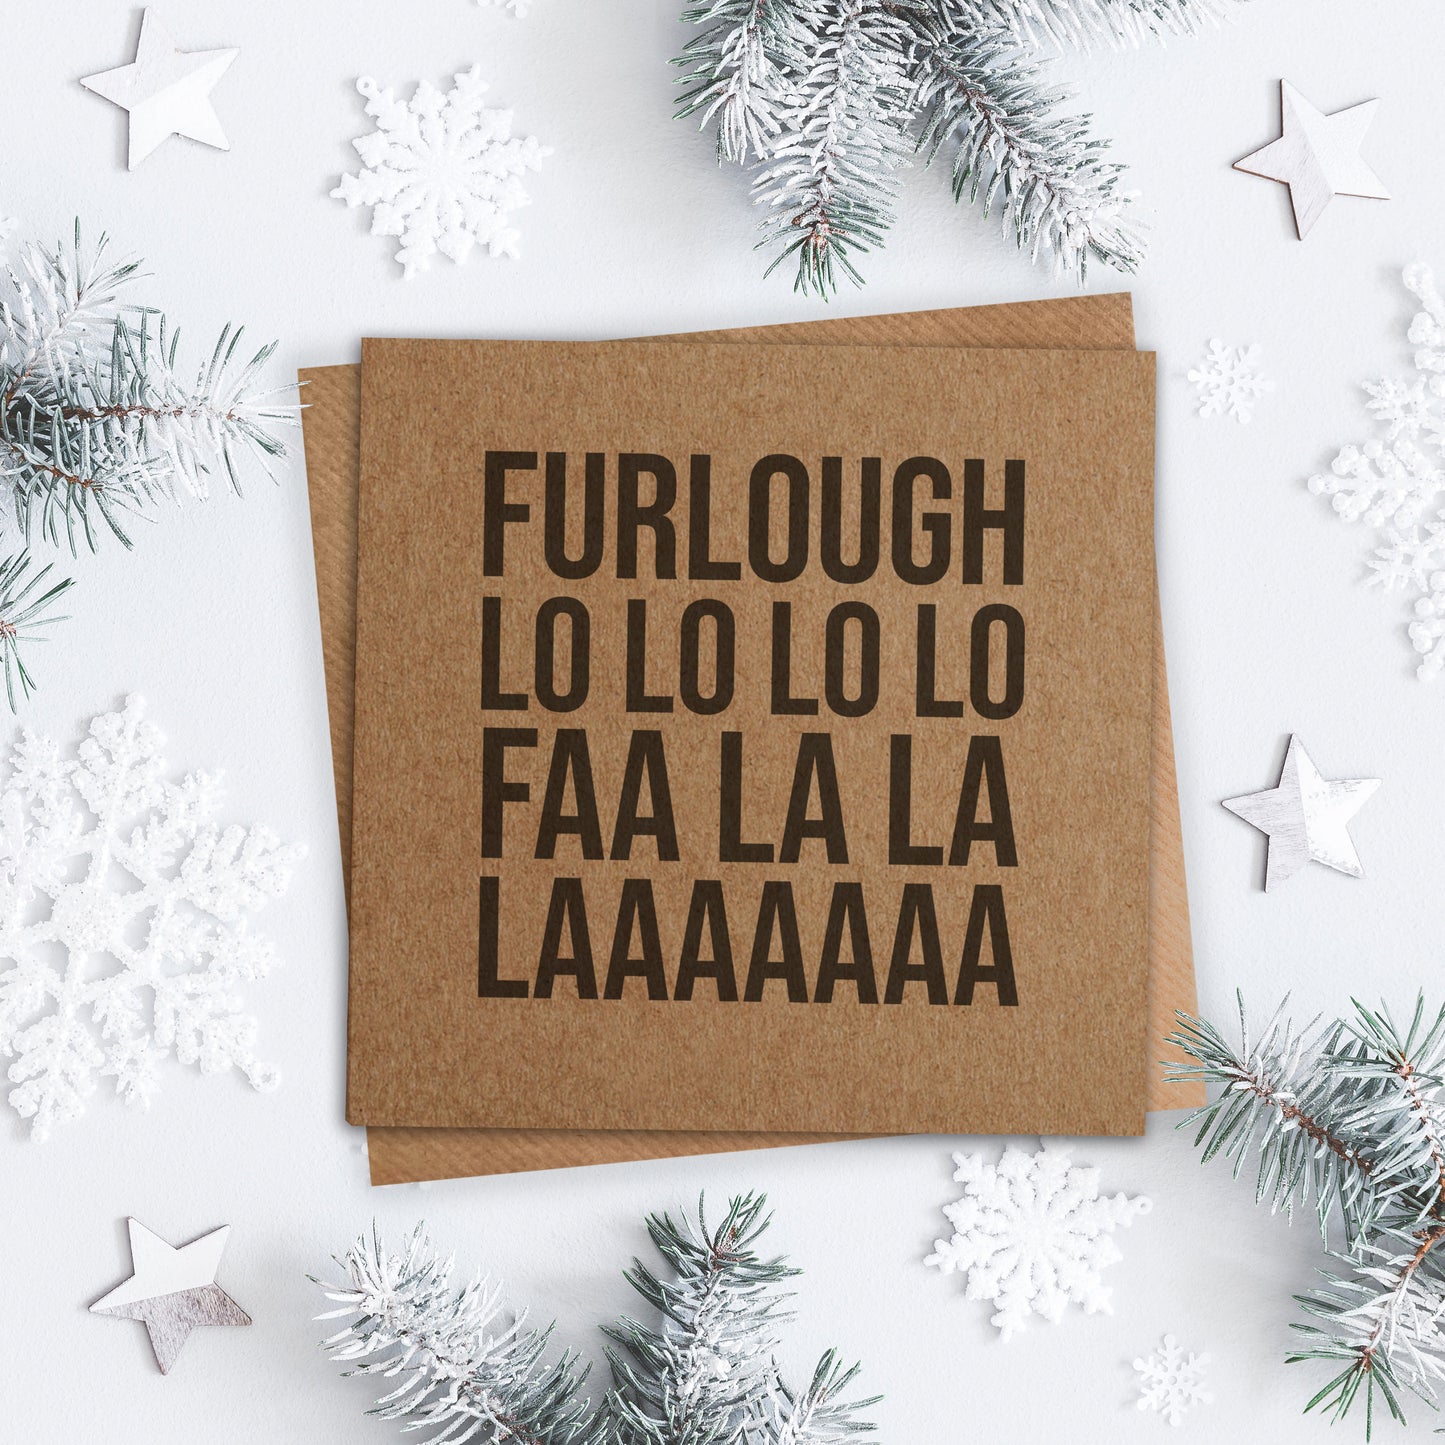 Furlough Fa La La La Christmas Card. Lockdown Christmas Card. Funny Covid Card. Kraft Card. Send Direct Option.